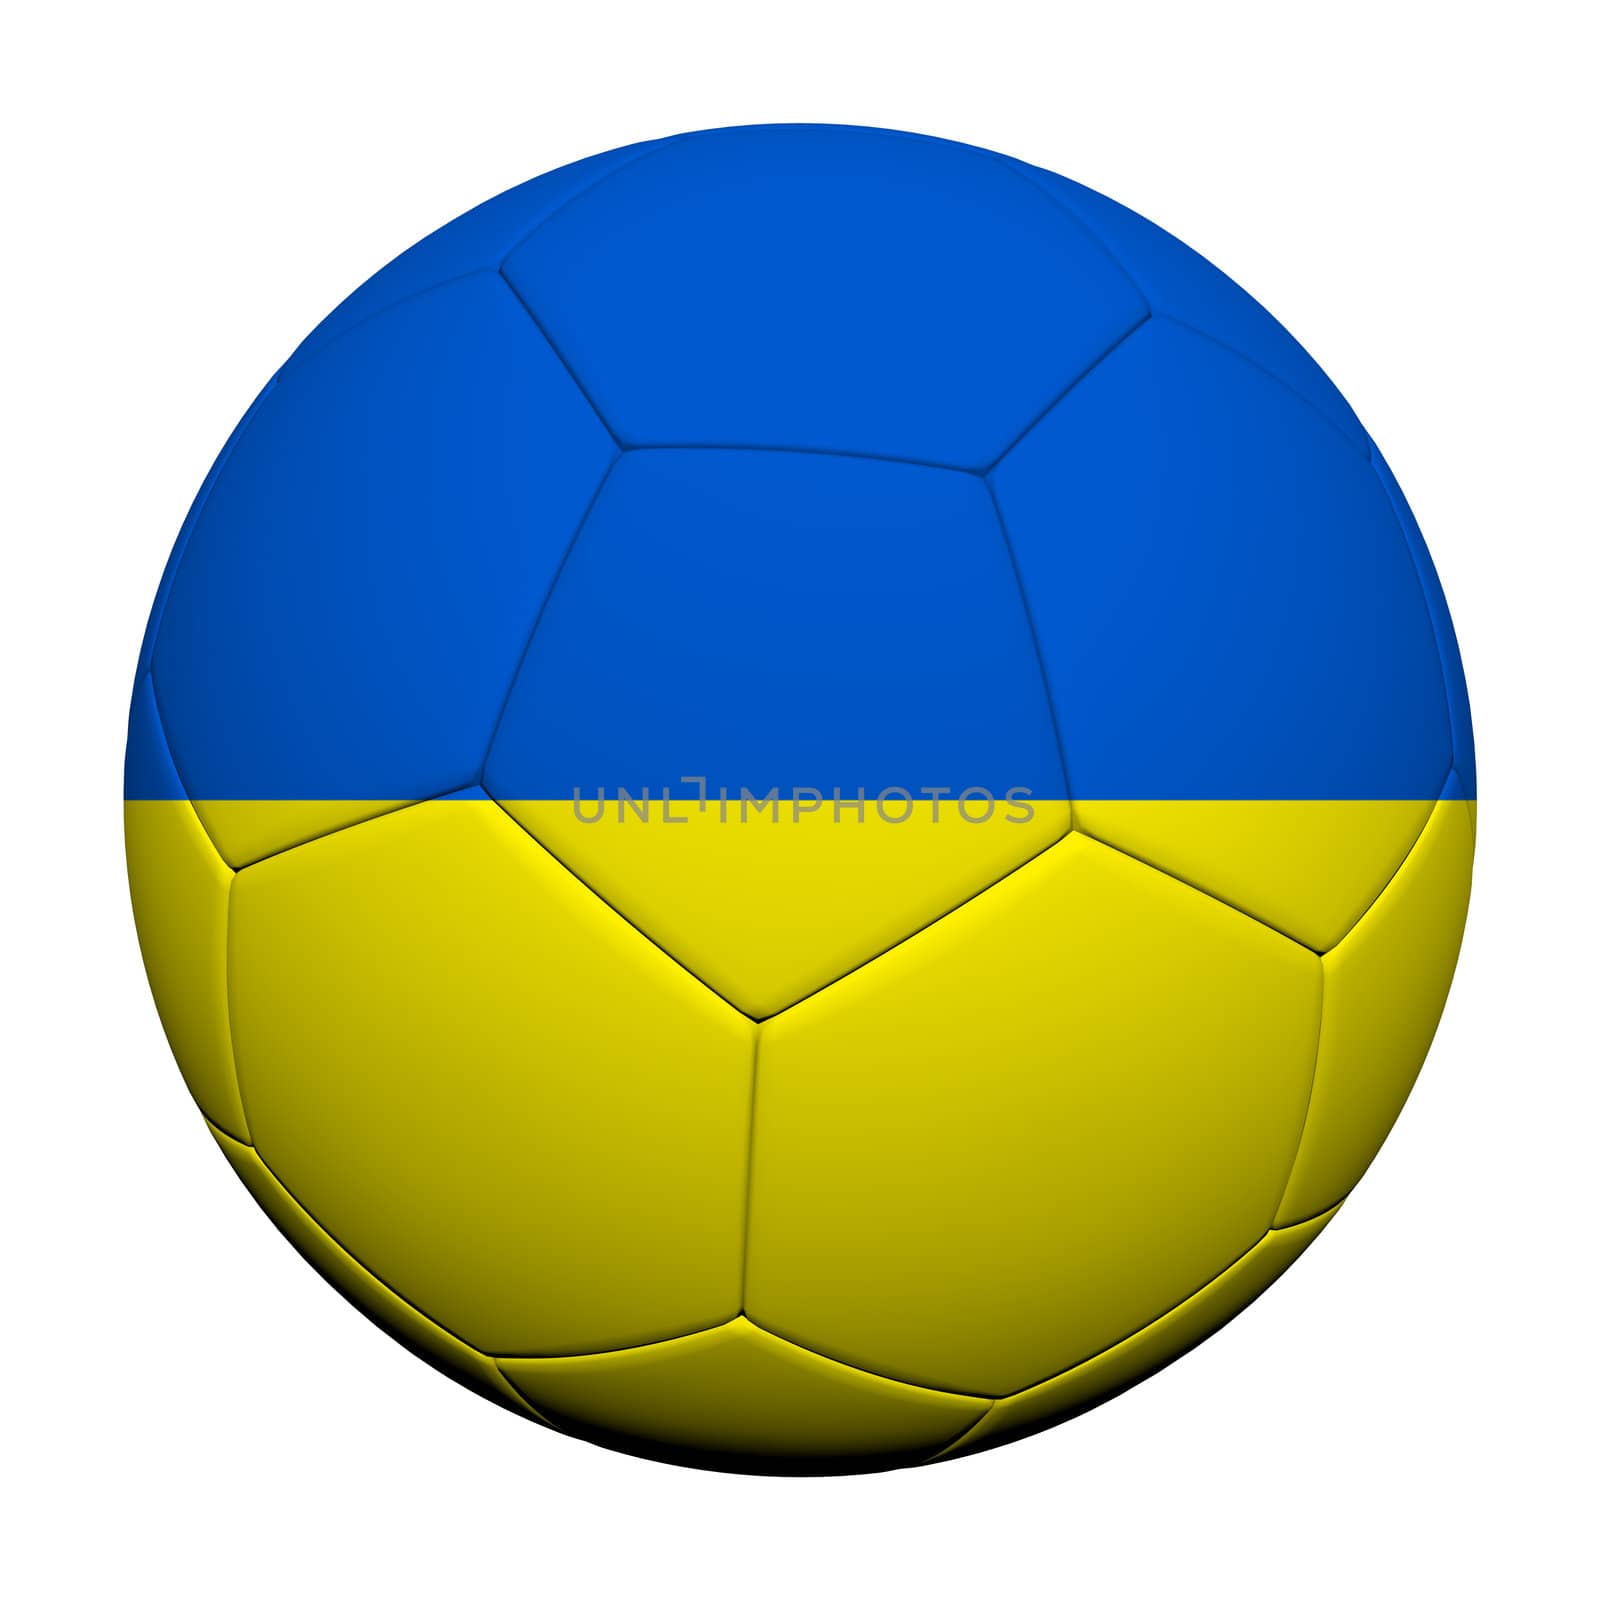 Ukraine Flag Pattern 3d rendering of a soccer ball 